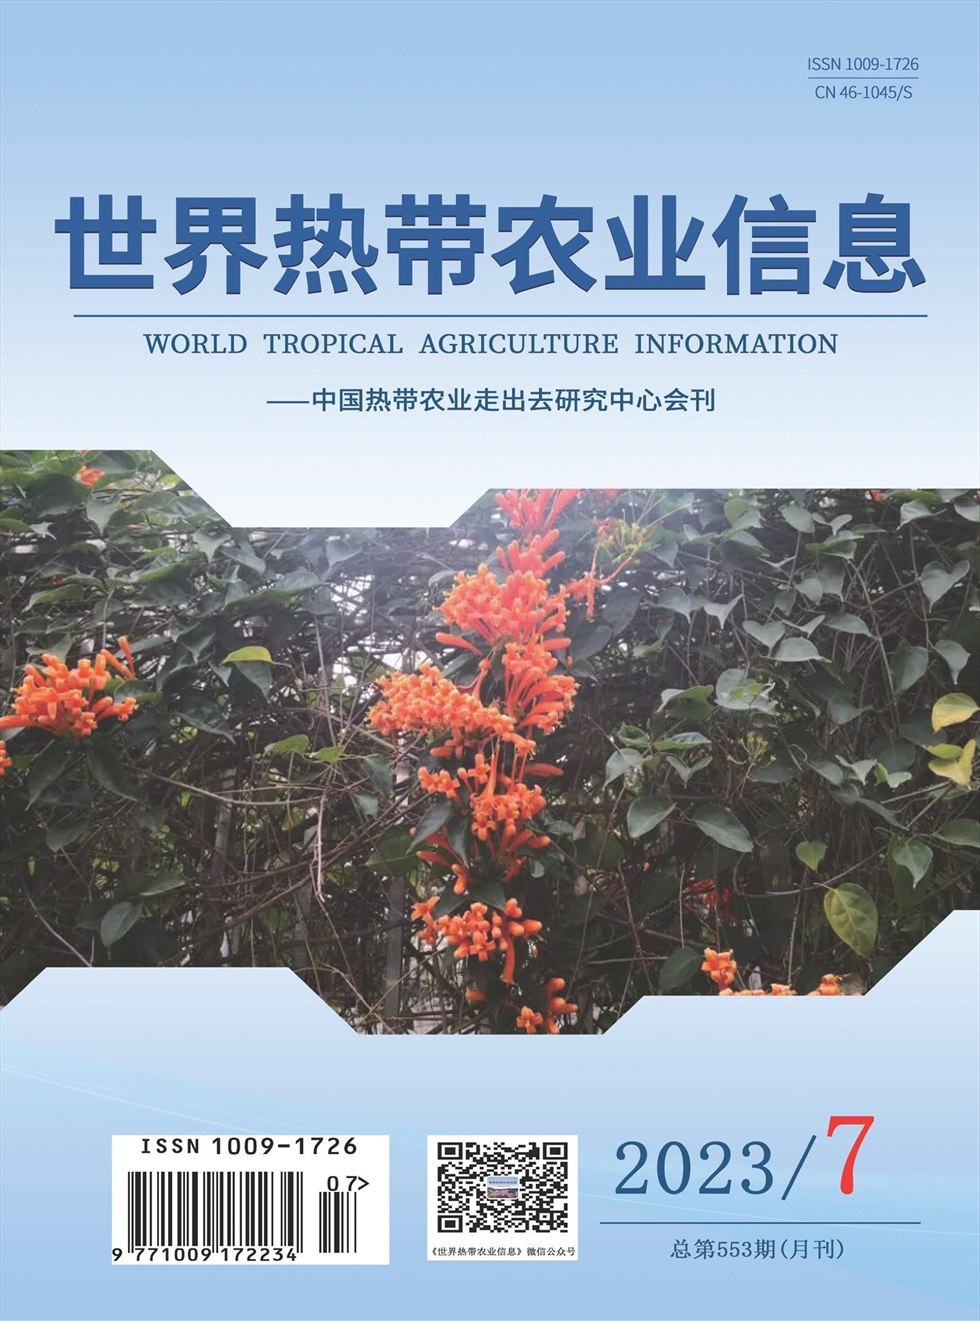 世界热带农业信息杂志封面